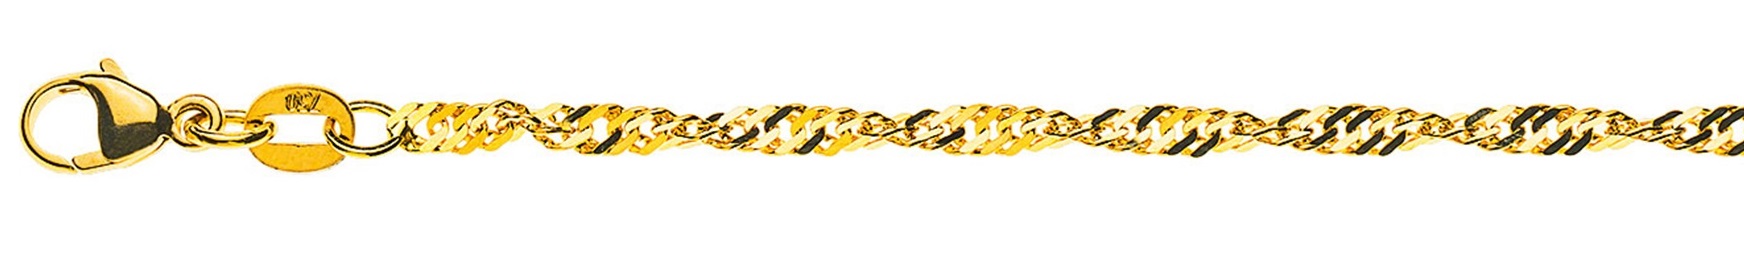 AURONOS Prestige Necklace Yellow Gold 18K Singapore Chain 45cm 2.4mm